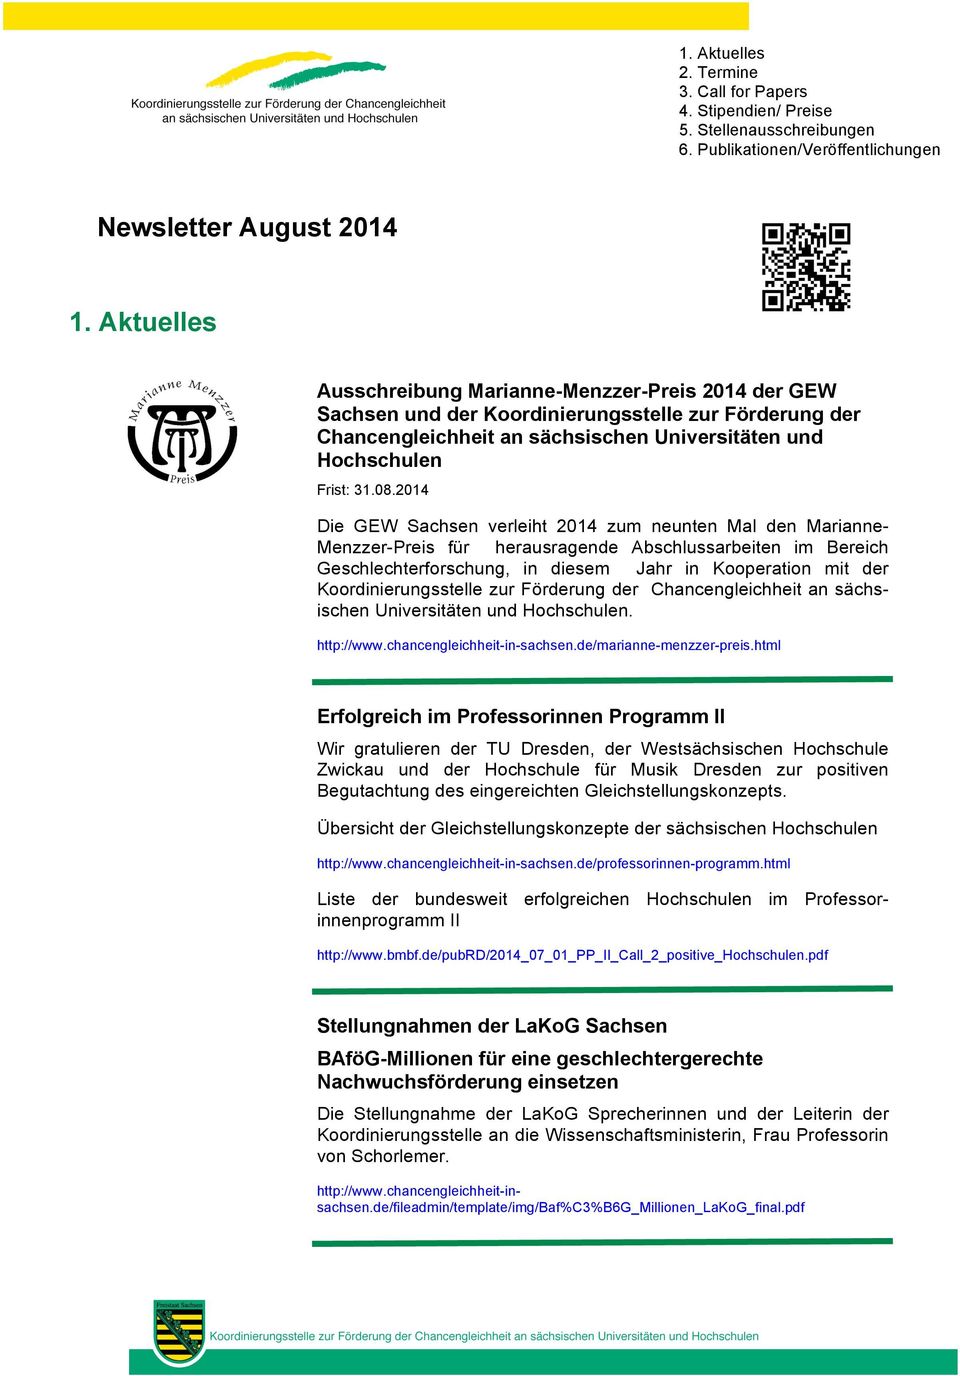 2014 Die GEW Sachsen verleiht 2014 zum neunten Mal den Marianne- Menzzer-Preis für herausragende Abschlussarbeiten im Bereich Geschlechterforschung, in diesem Jahr in Kooperation mit der